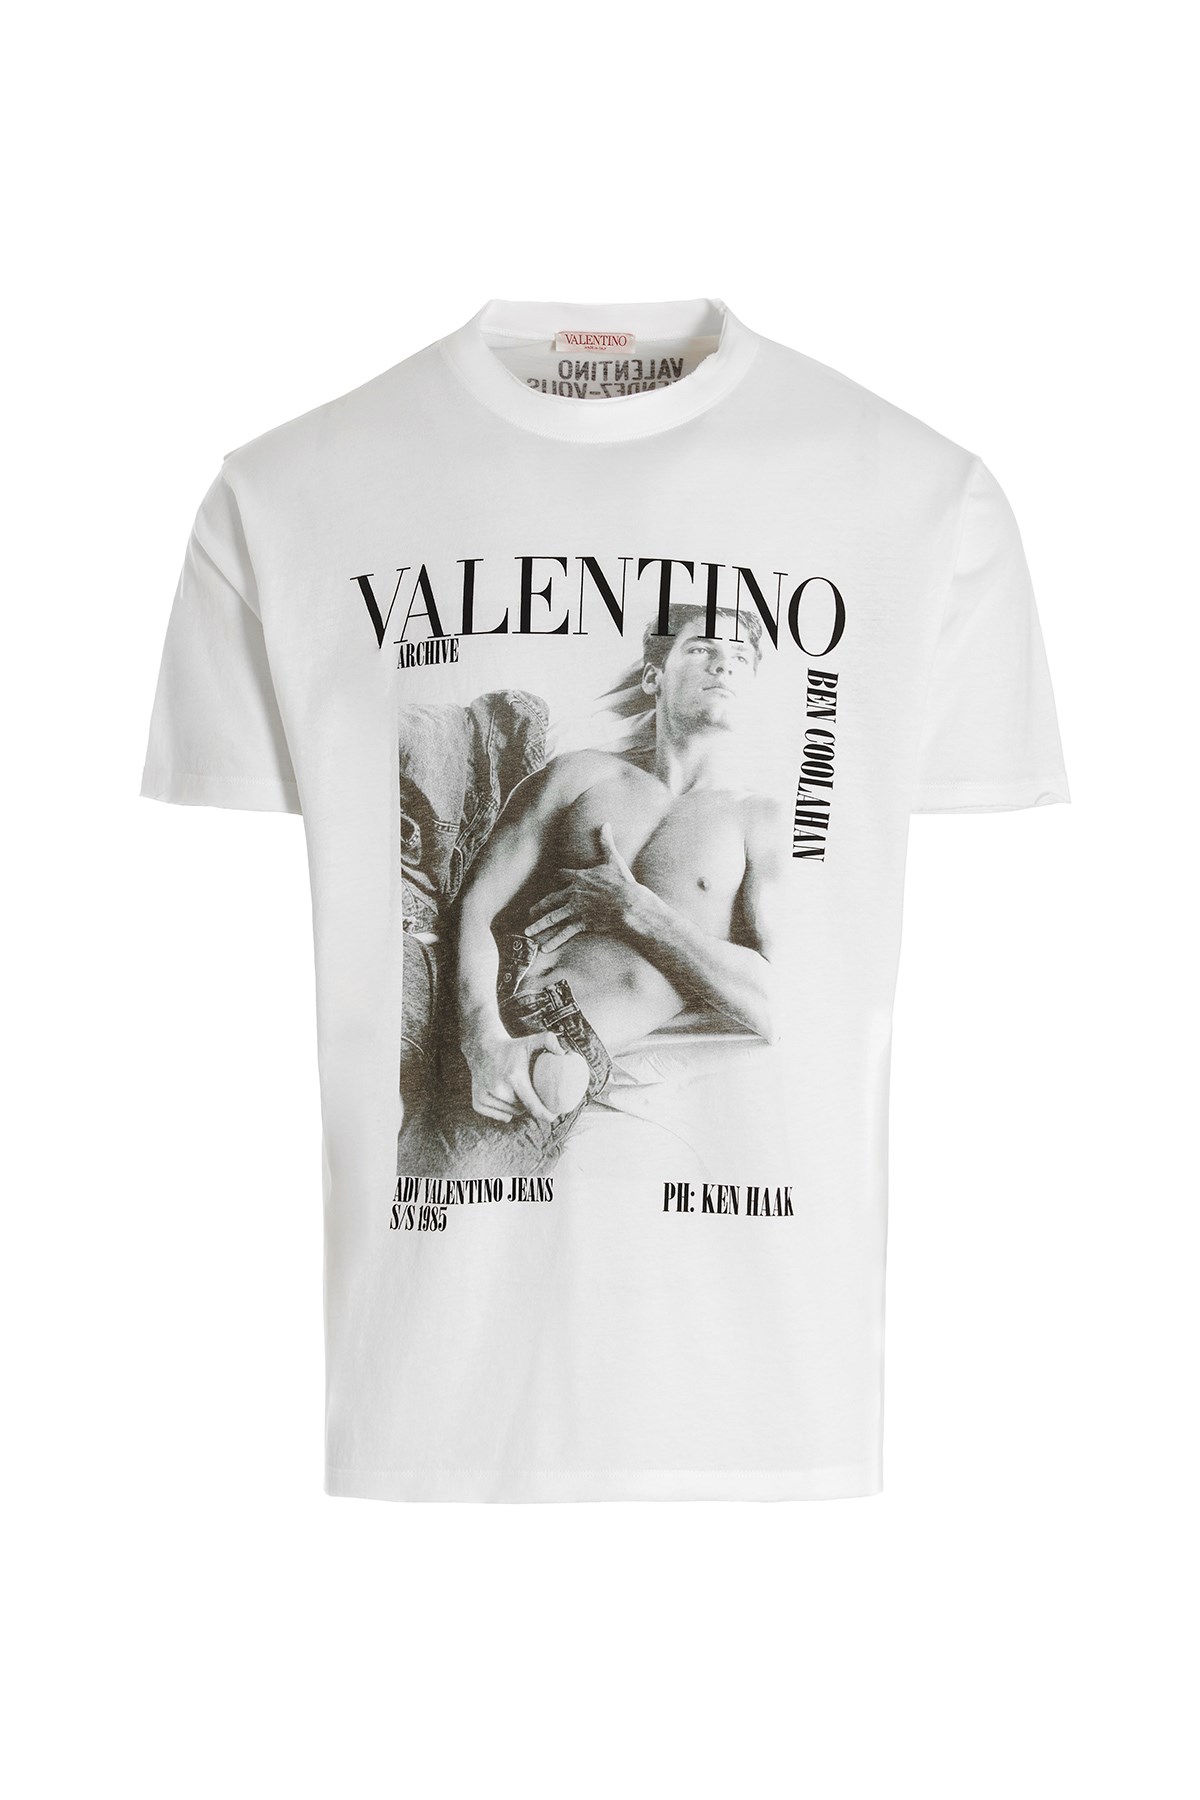 VALENTINO T-Shirt Mit Druck 'Archivio'